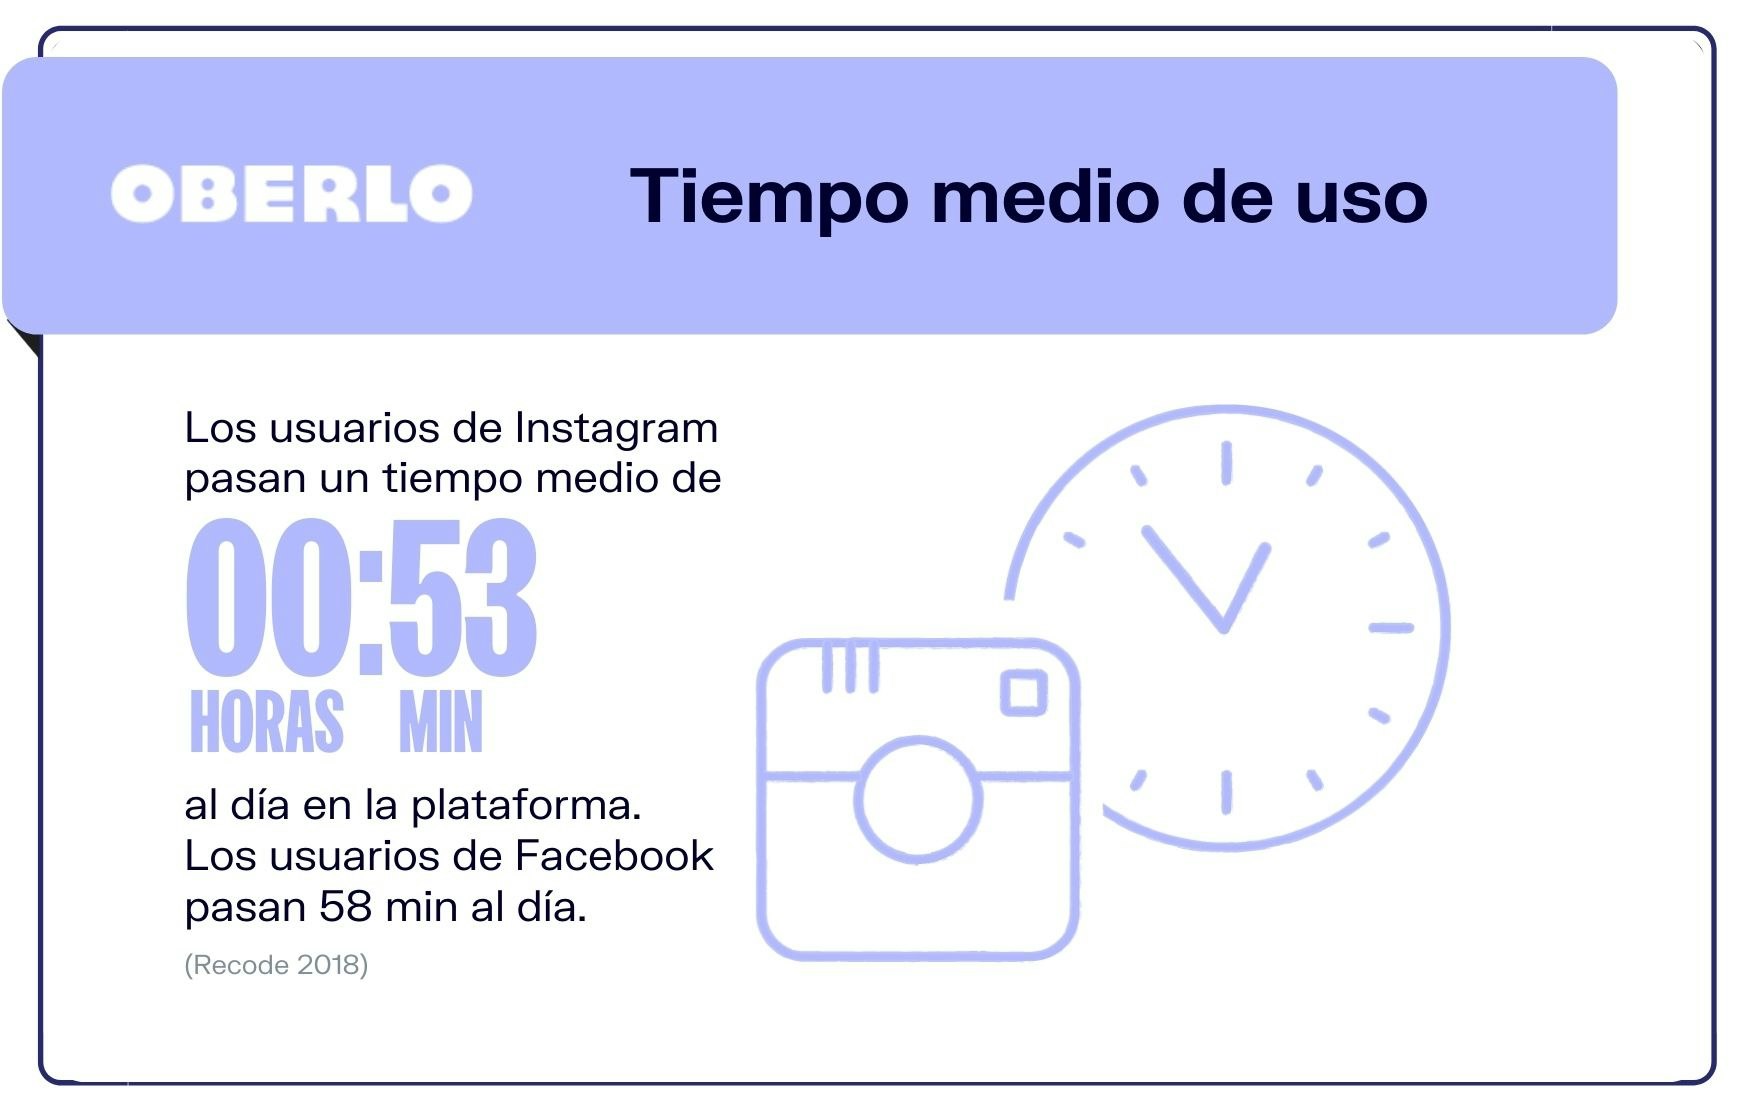 ¿Cuánto tiempo pasan los usuarios en Instagram?